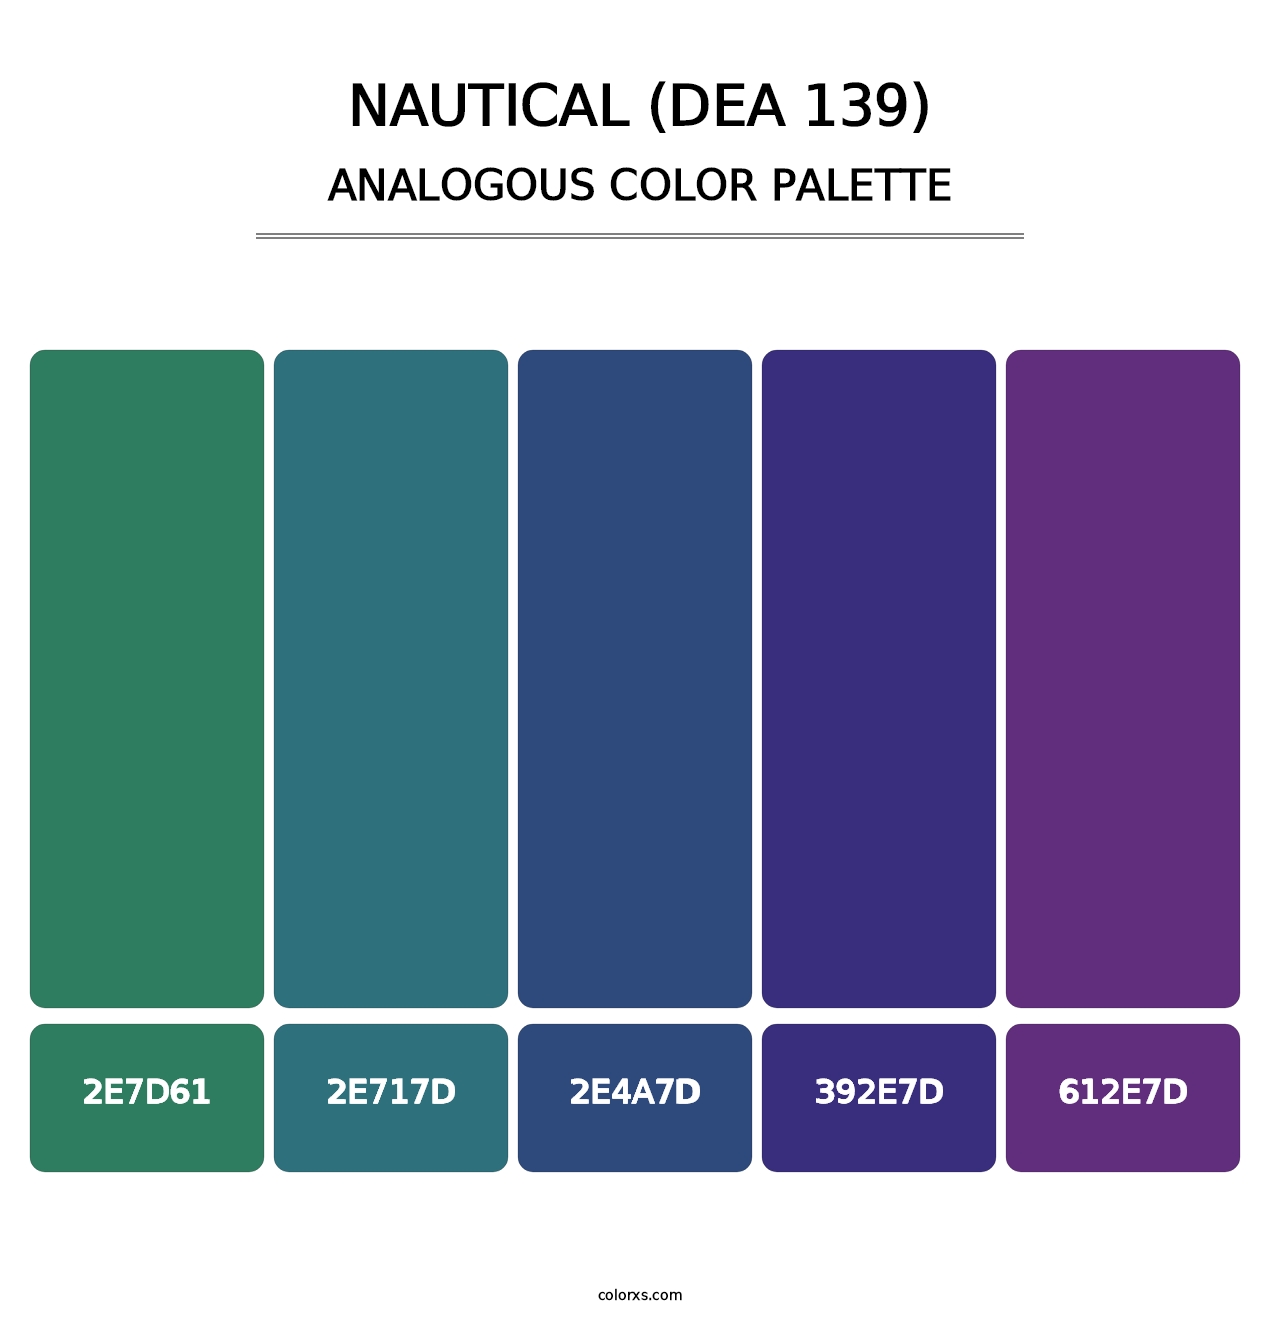 Nautical (DEA 139) - Analogous Color Palette